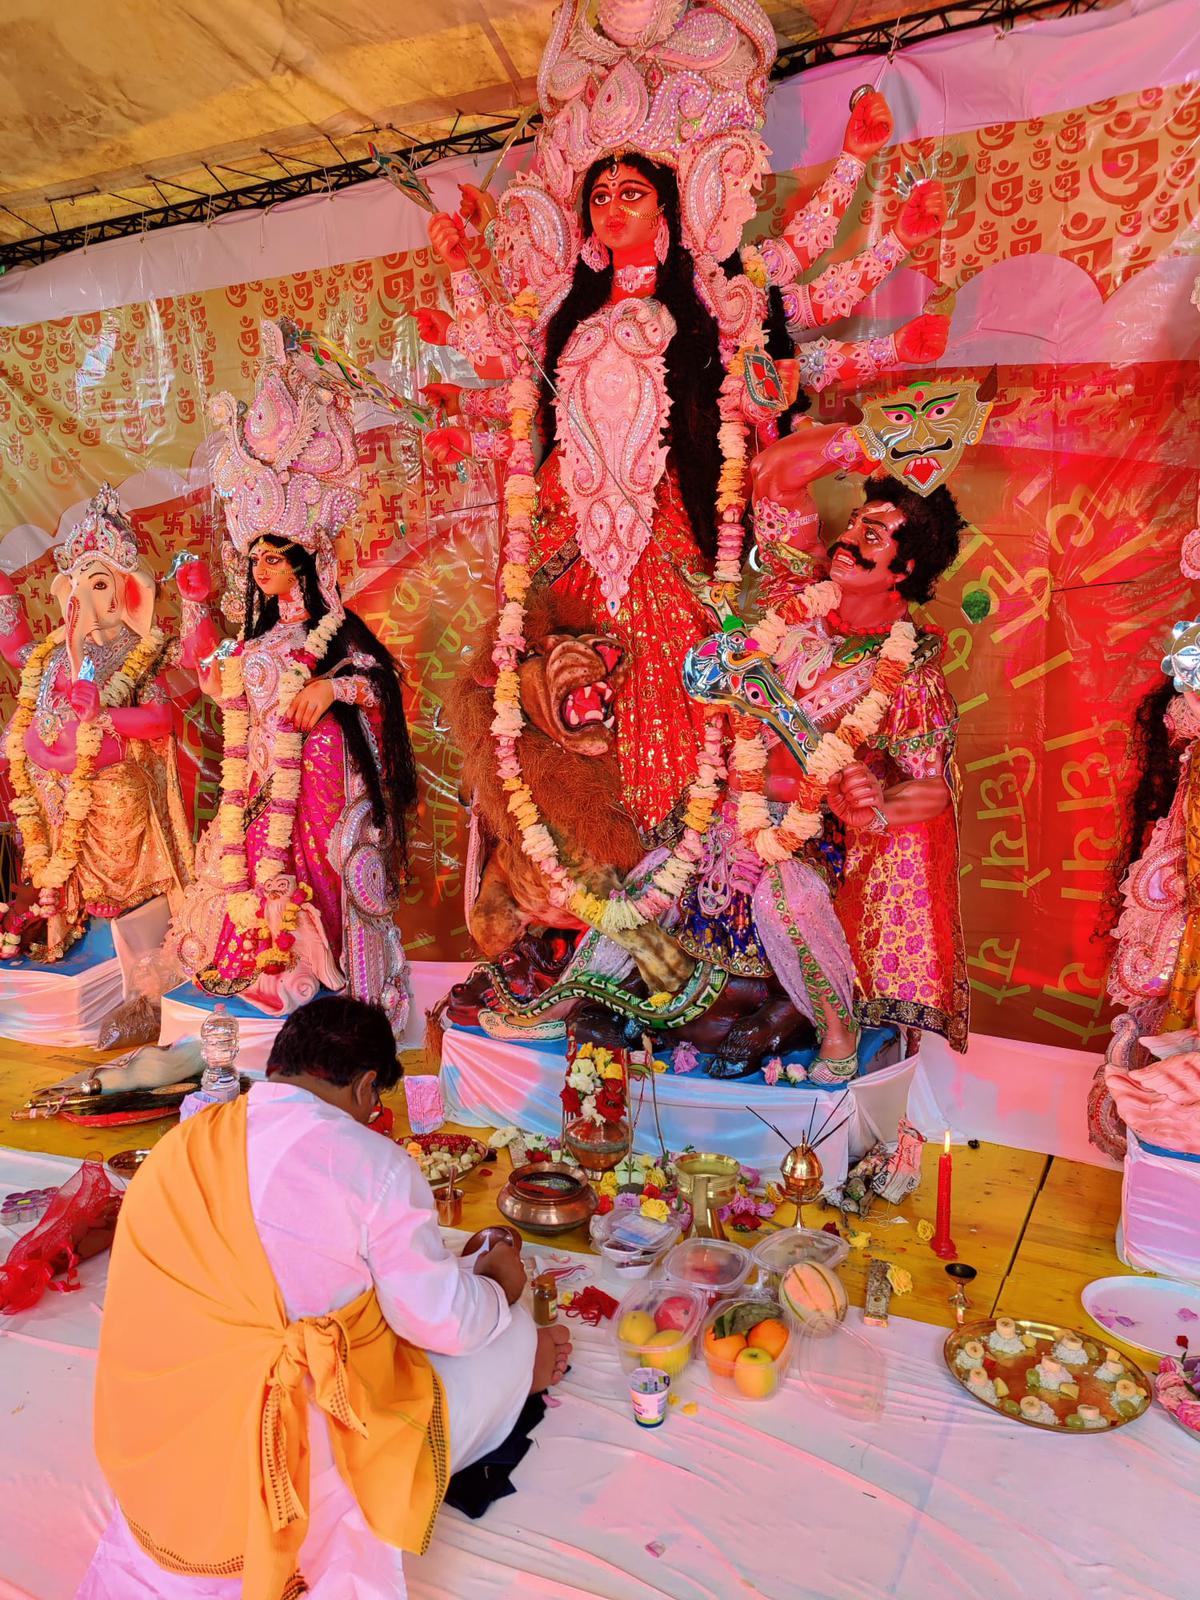 Utsa Bhaduri performed the rituals of the puja